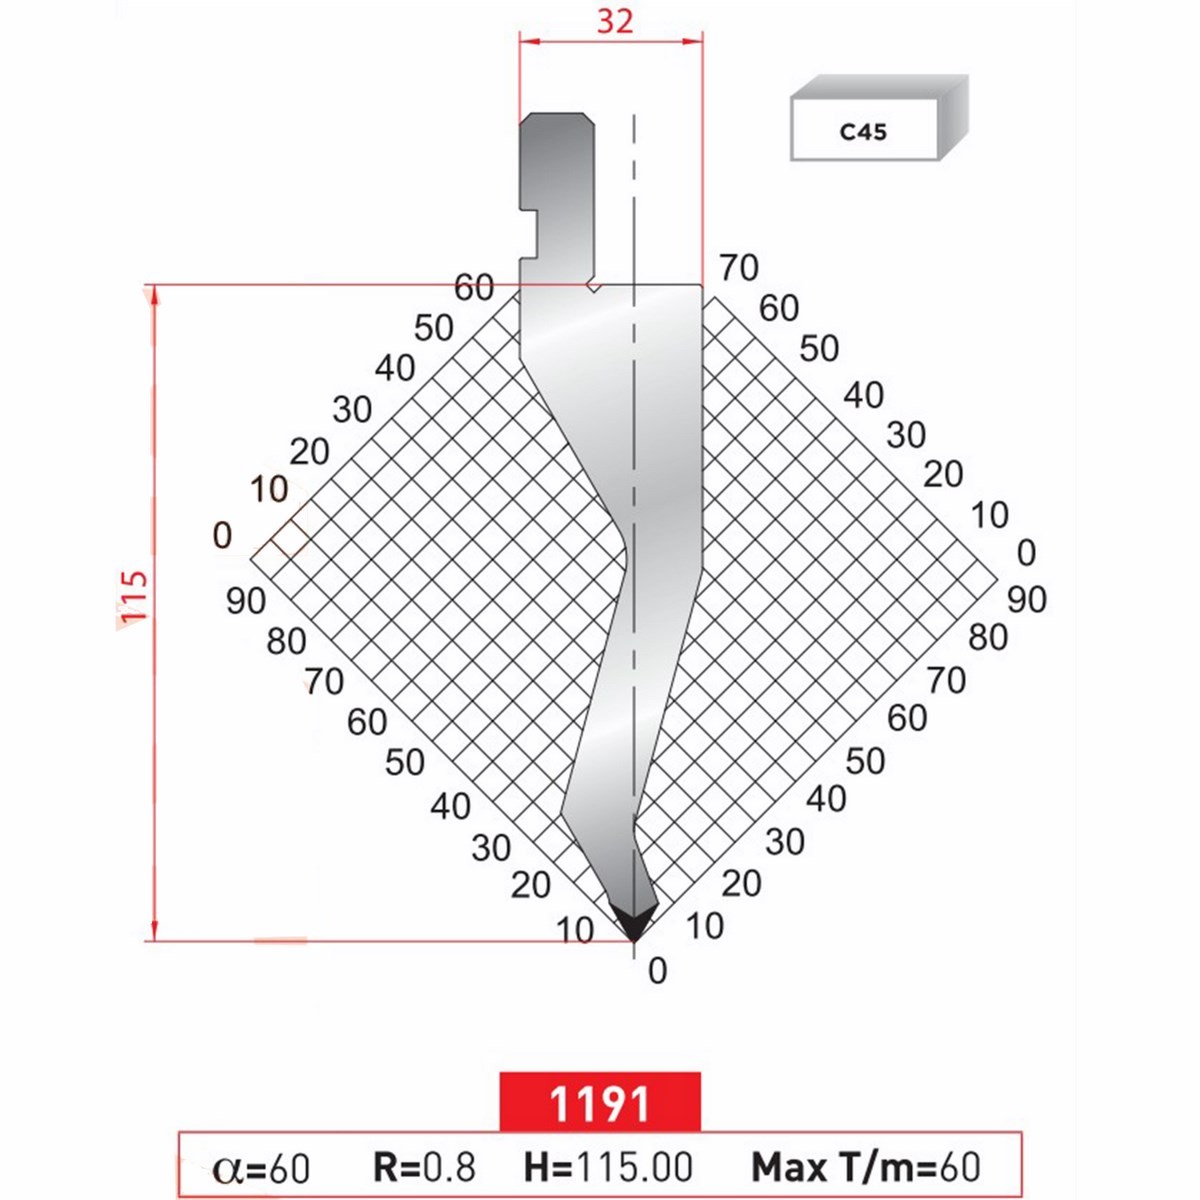 Poinçon 11191 Lg: 805 mm Fractionné